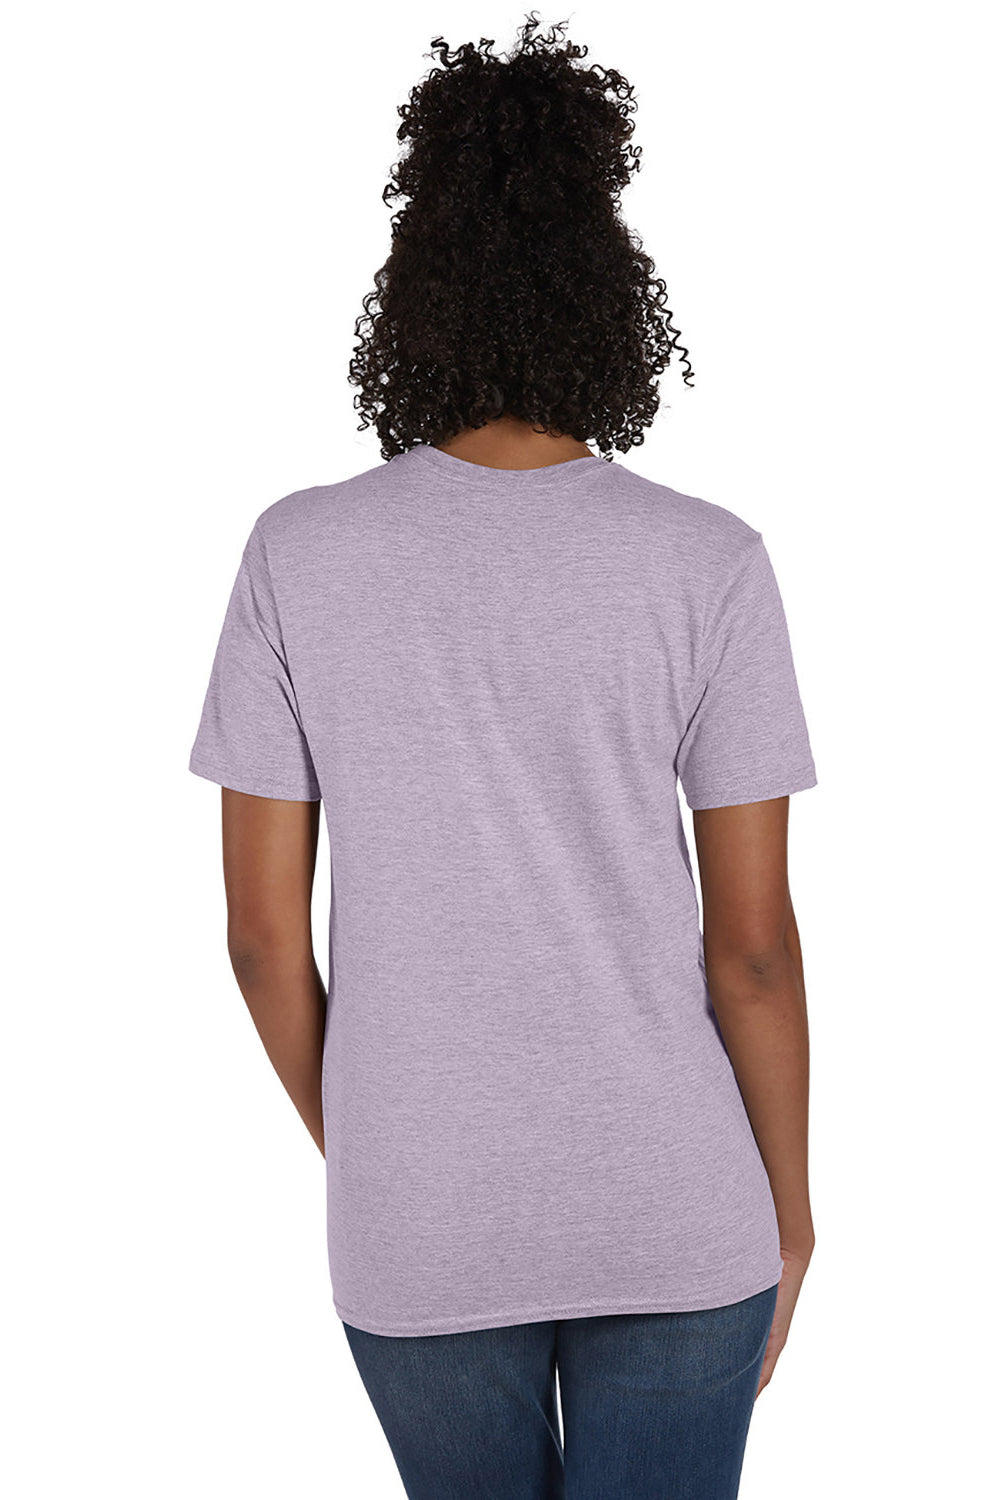 Hanes 4980 Mens Nano-T Short Sleeve Crewneck T-Shirt Marbled Pale Violet Back